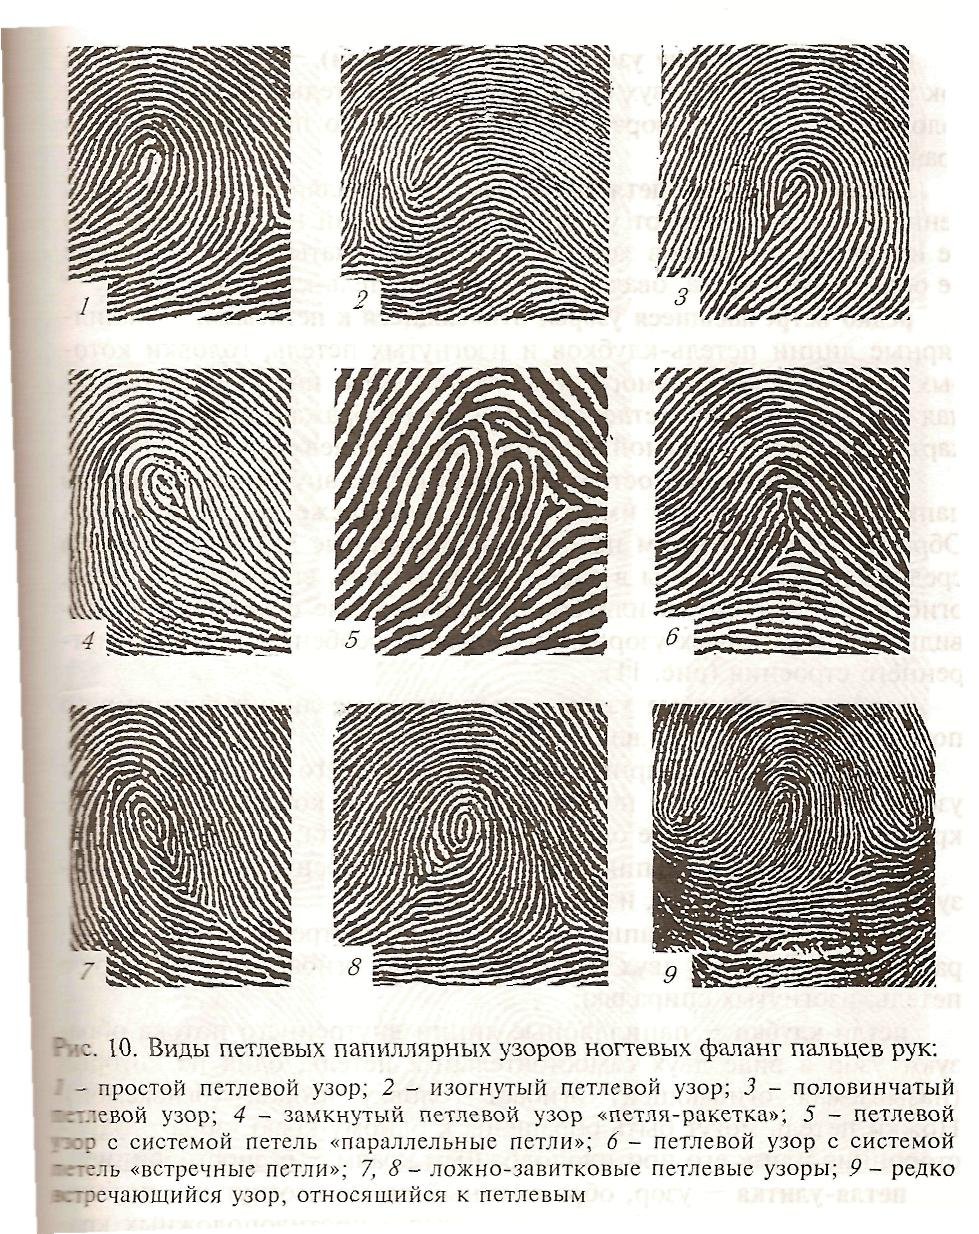 Типы папиллярных узоров пальцев рук криминалистика